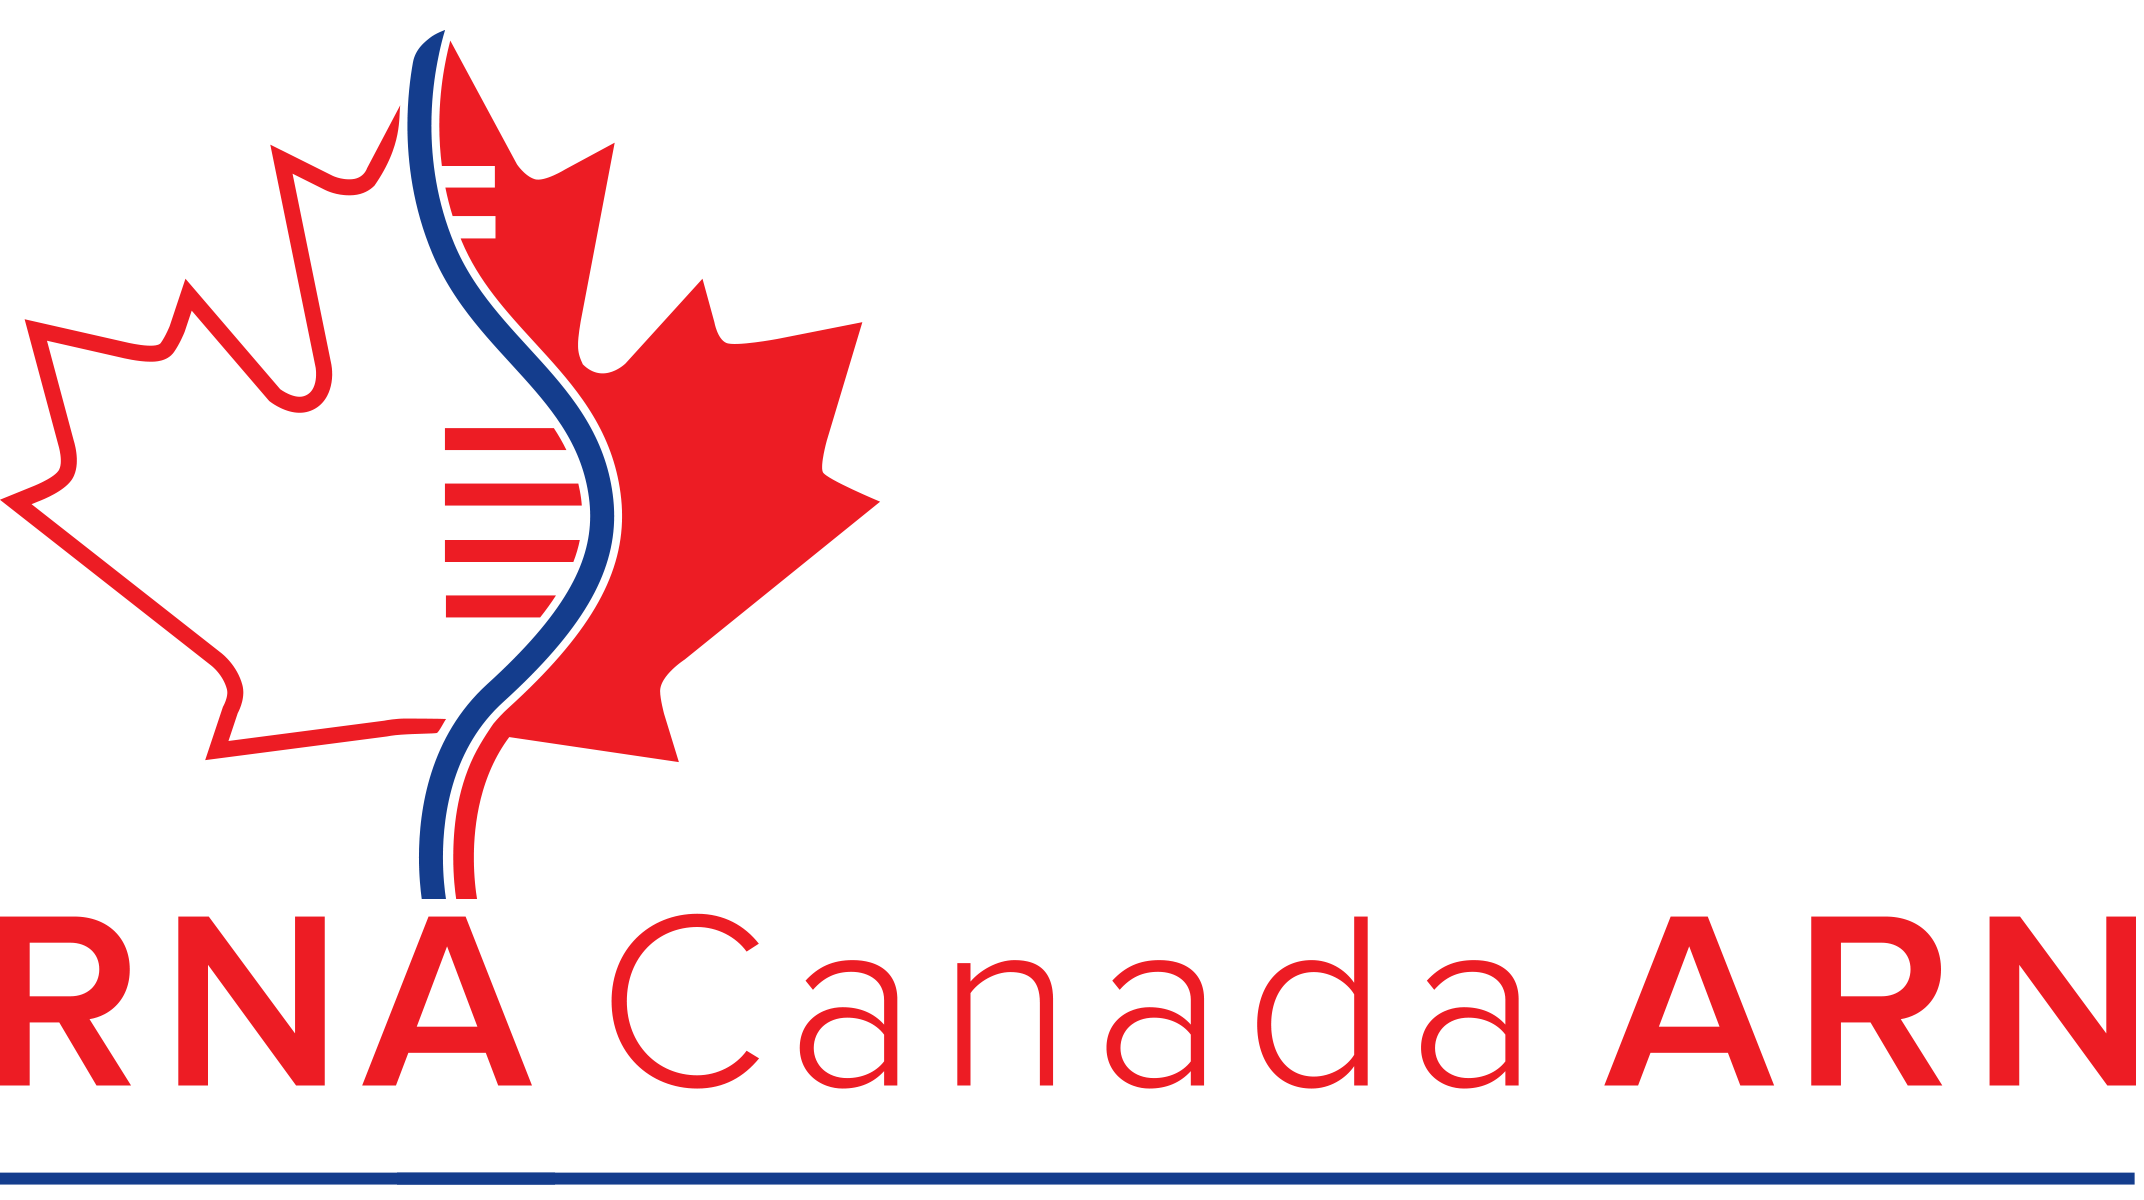 RNA Canada ARN